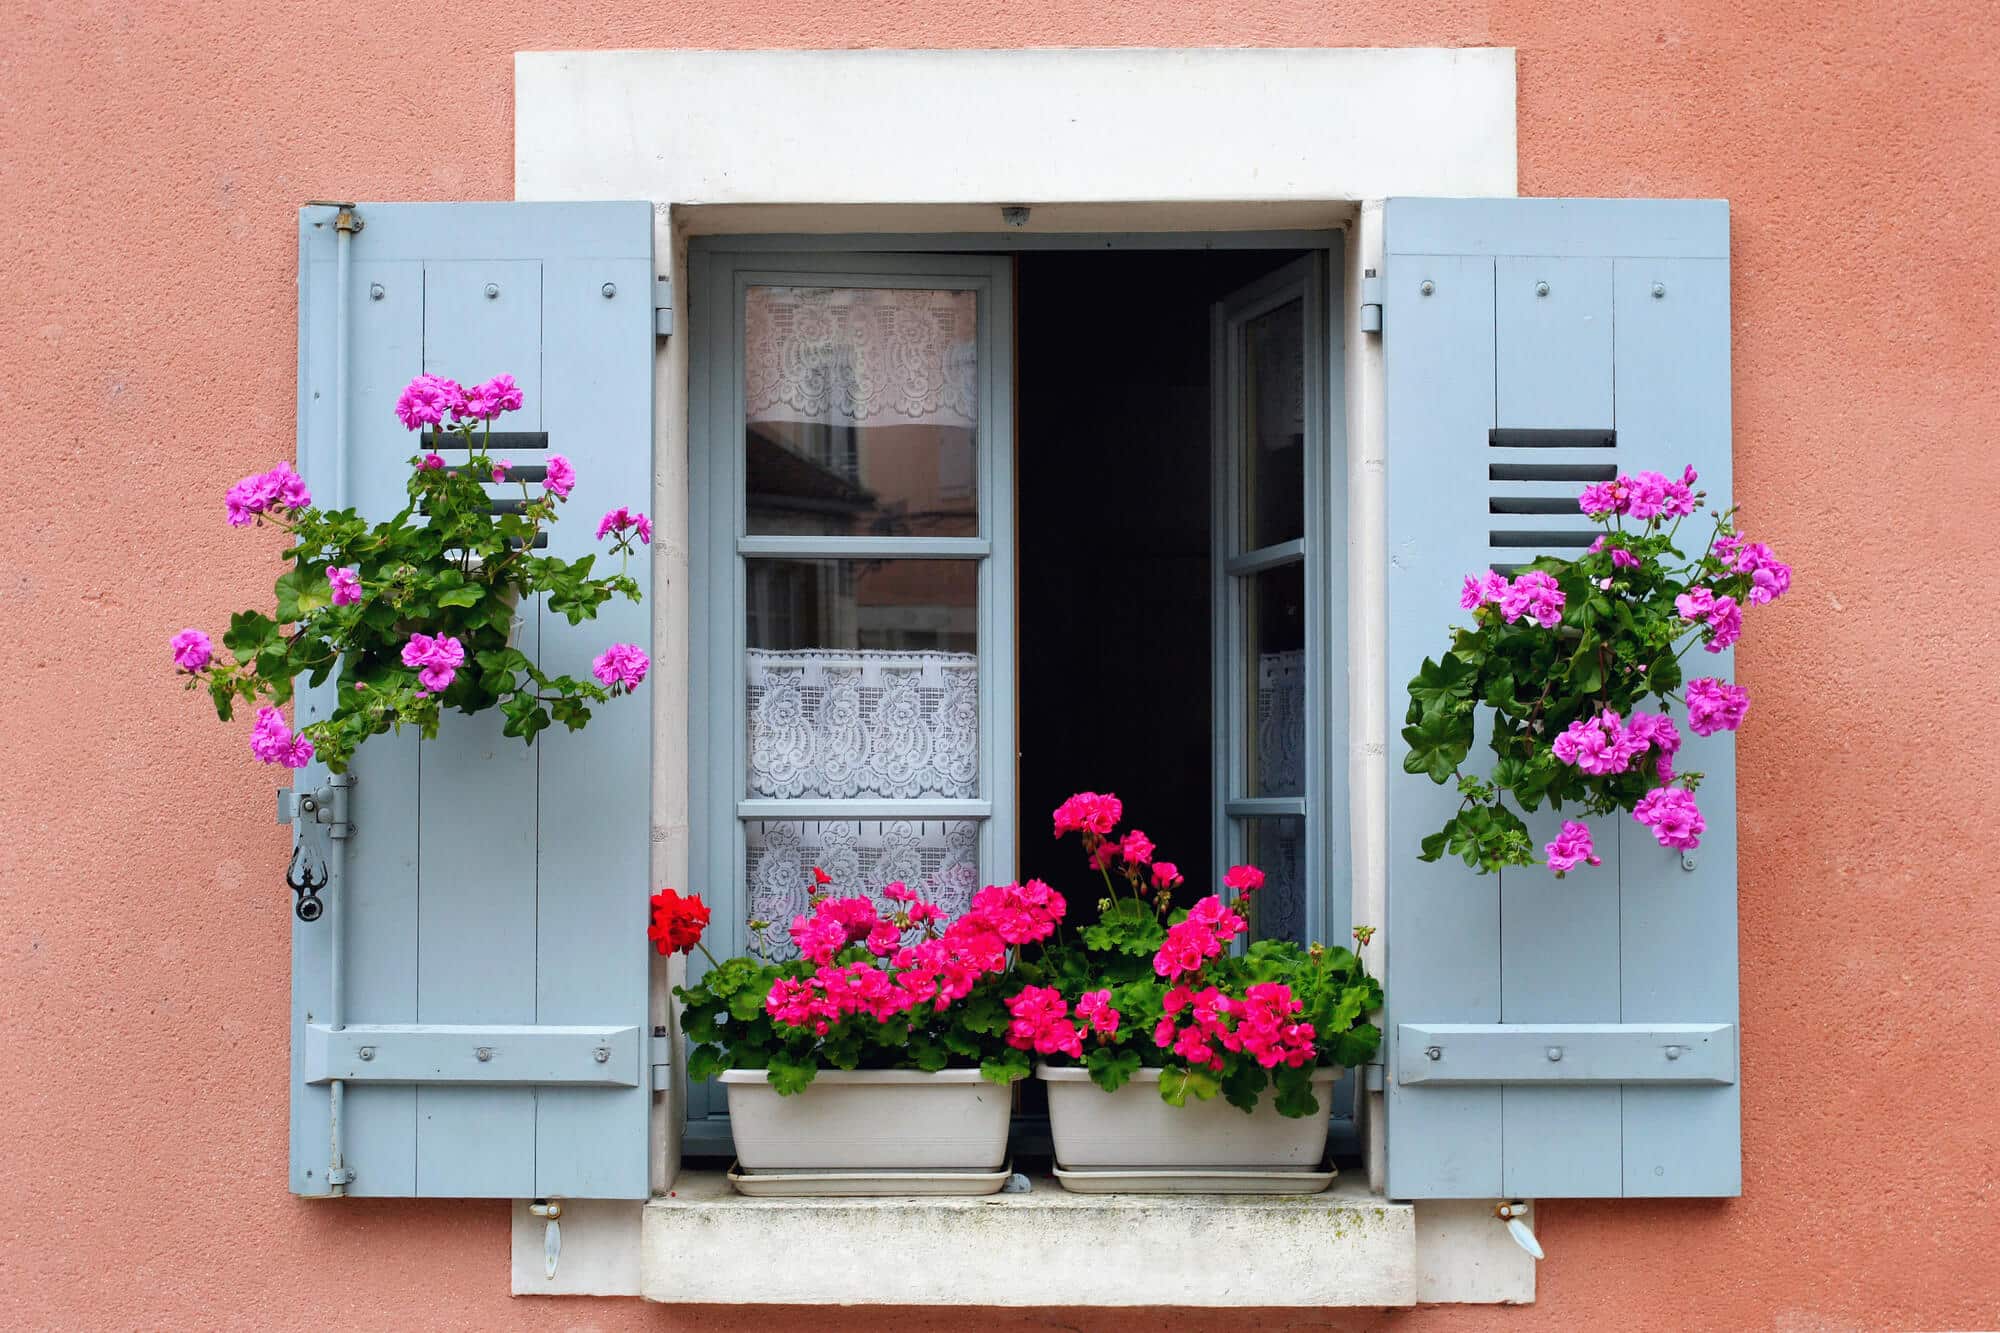 סידור פרחים על אדן חלון בבורגונדי, צרפת.  <a href="https://depositphotos.com. ">המחשה: depositphotos.com</a>